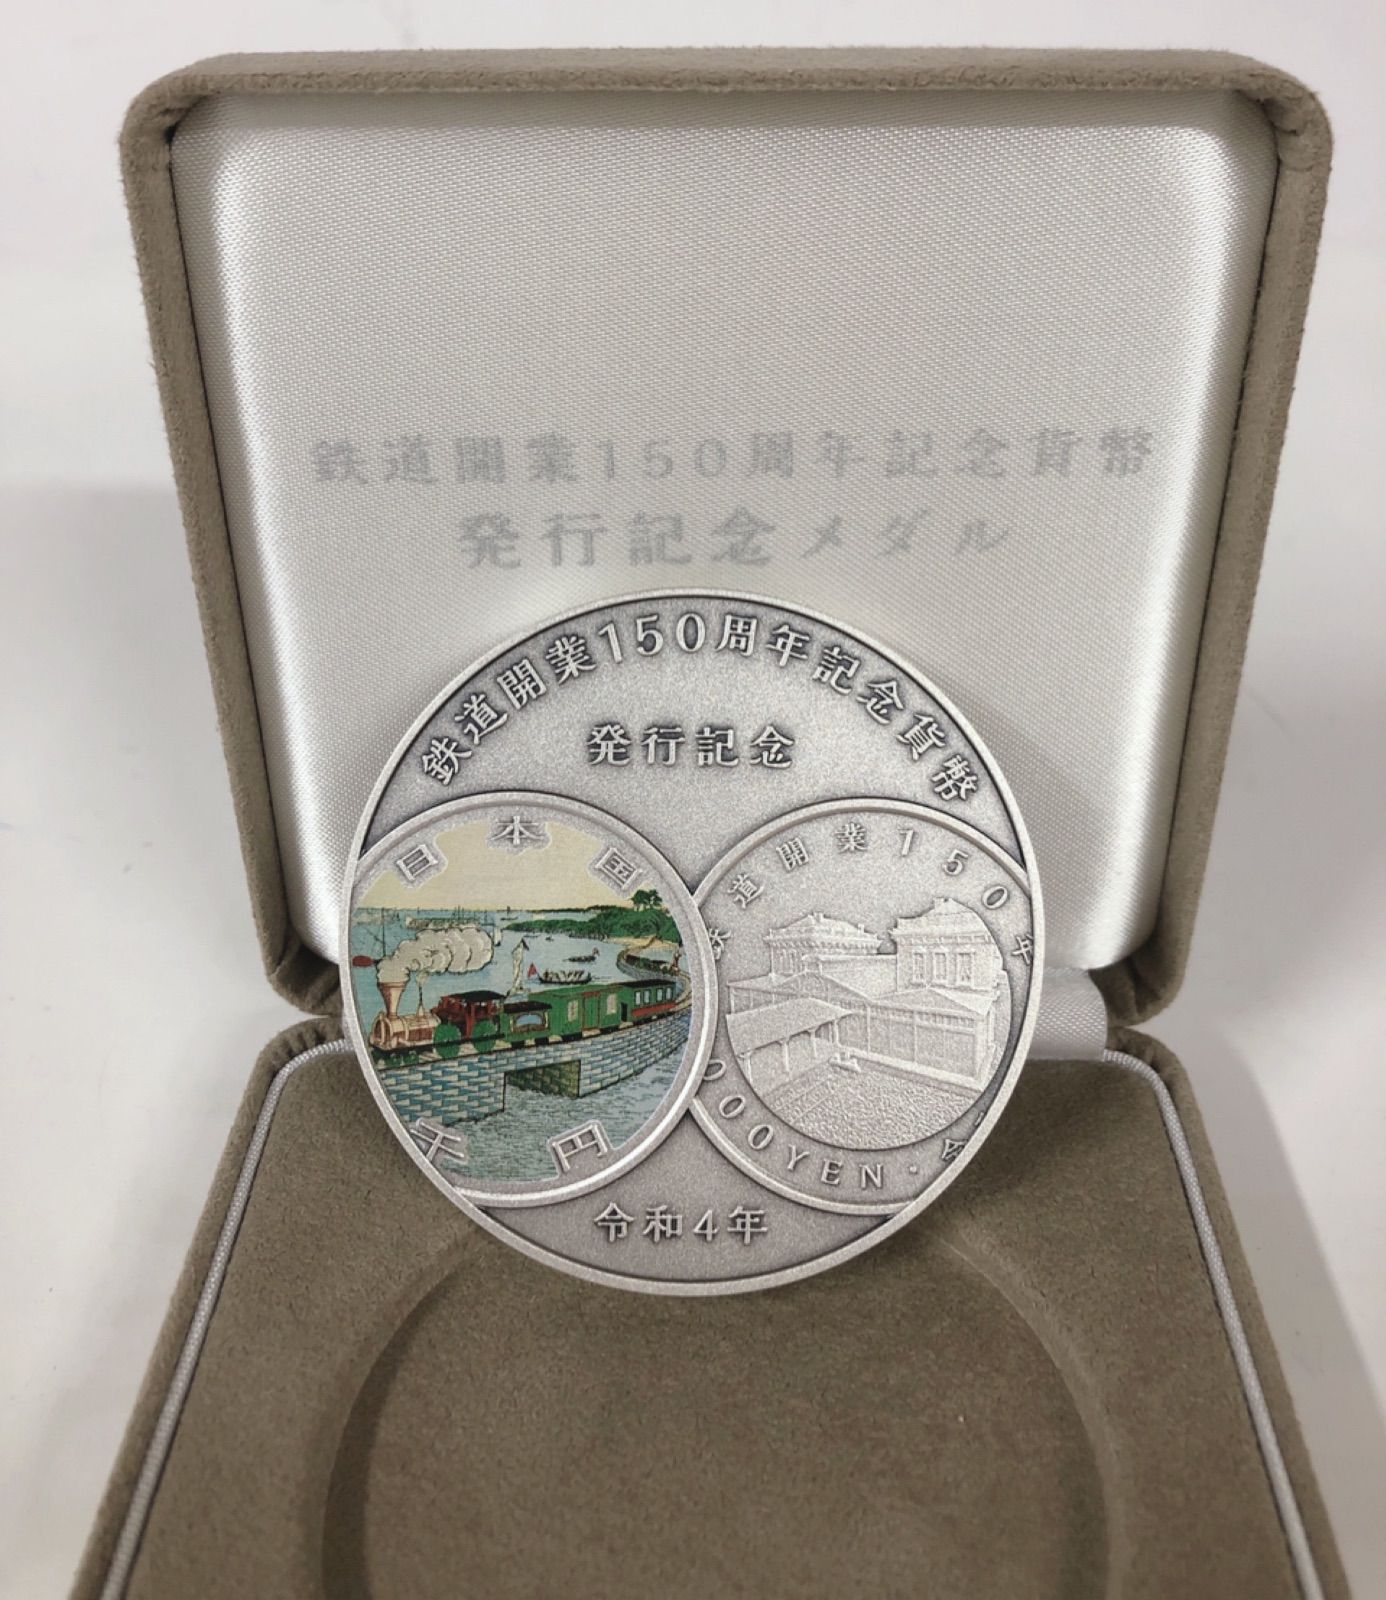 ホビー・楽器・アート（純銀製)鉄道開業150周年記念貨幣発行記念メダル